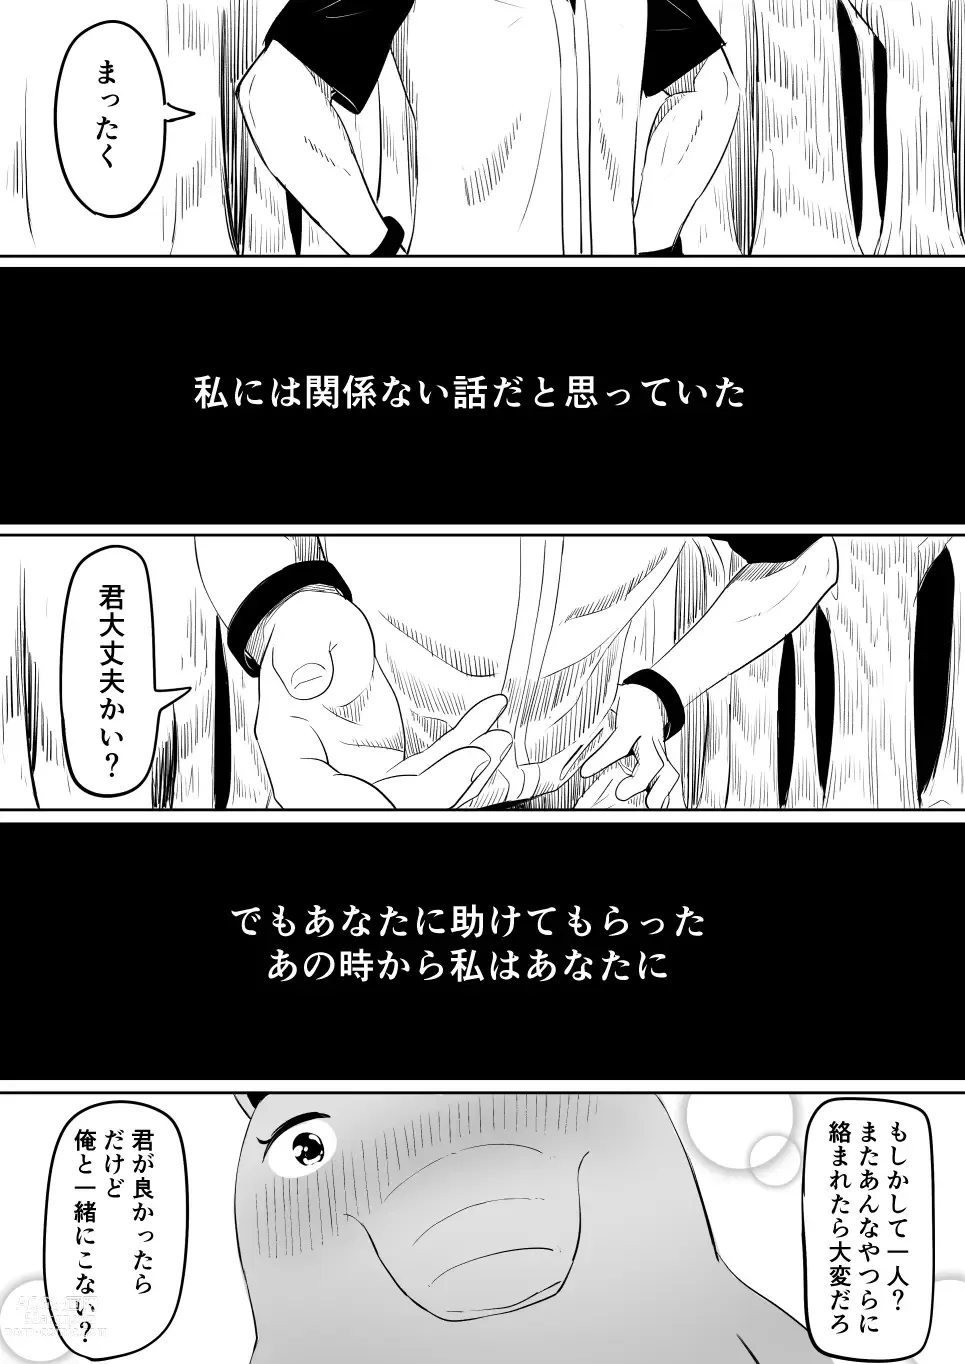 Page 4 of doujinshi Koi o Shita Sleeper-chan.